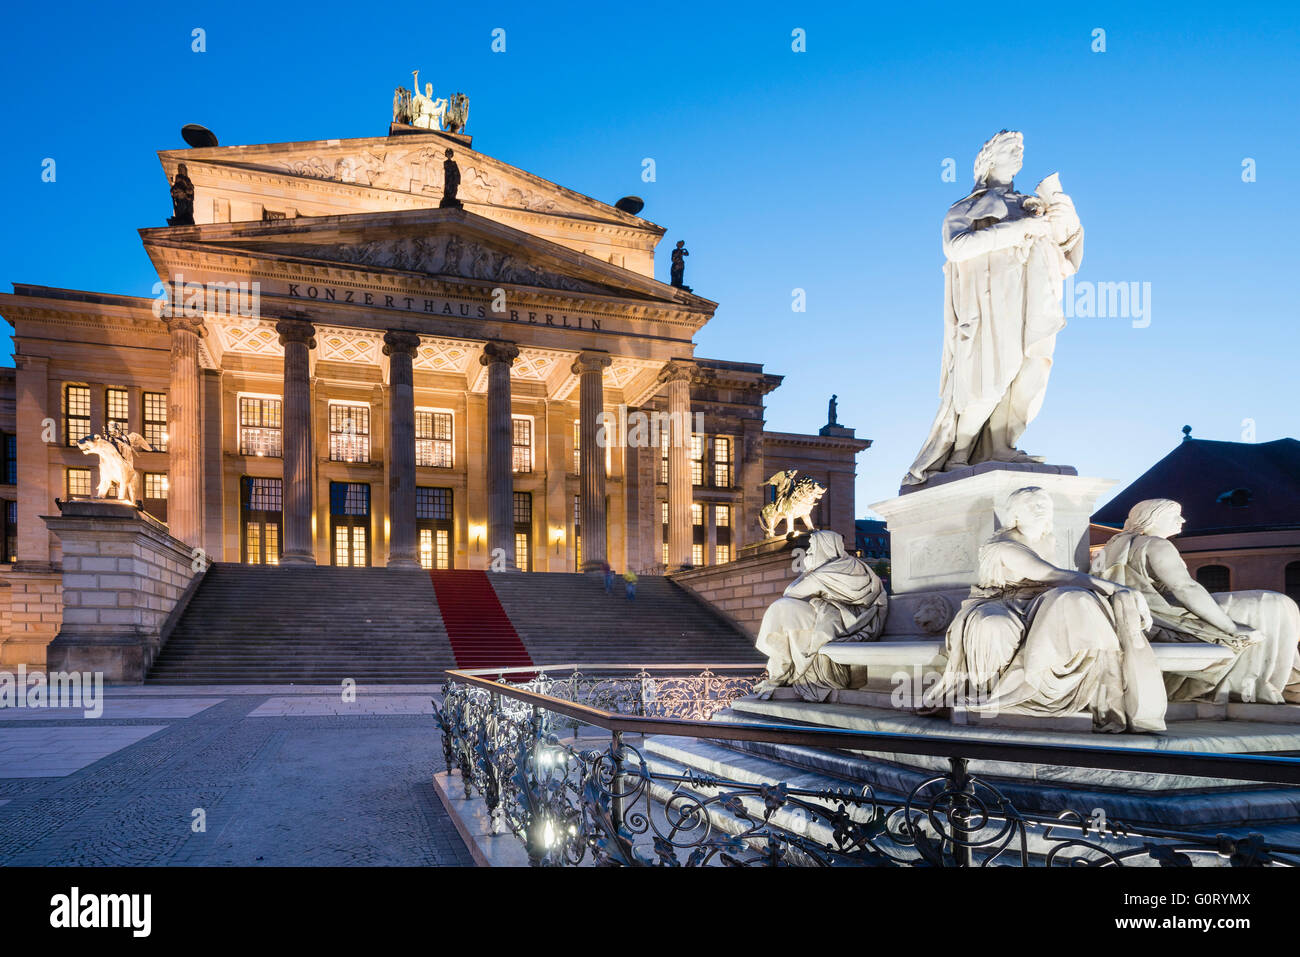 Statue de Schiller et Konzerthaus de place Gendarmenmarkt en soirée à Mitte Berlin Allemagne Banque D'Images